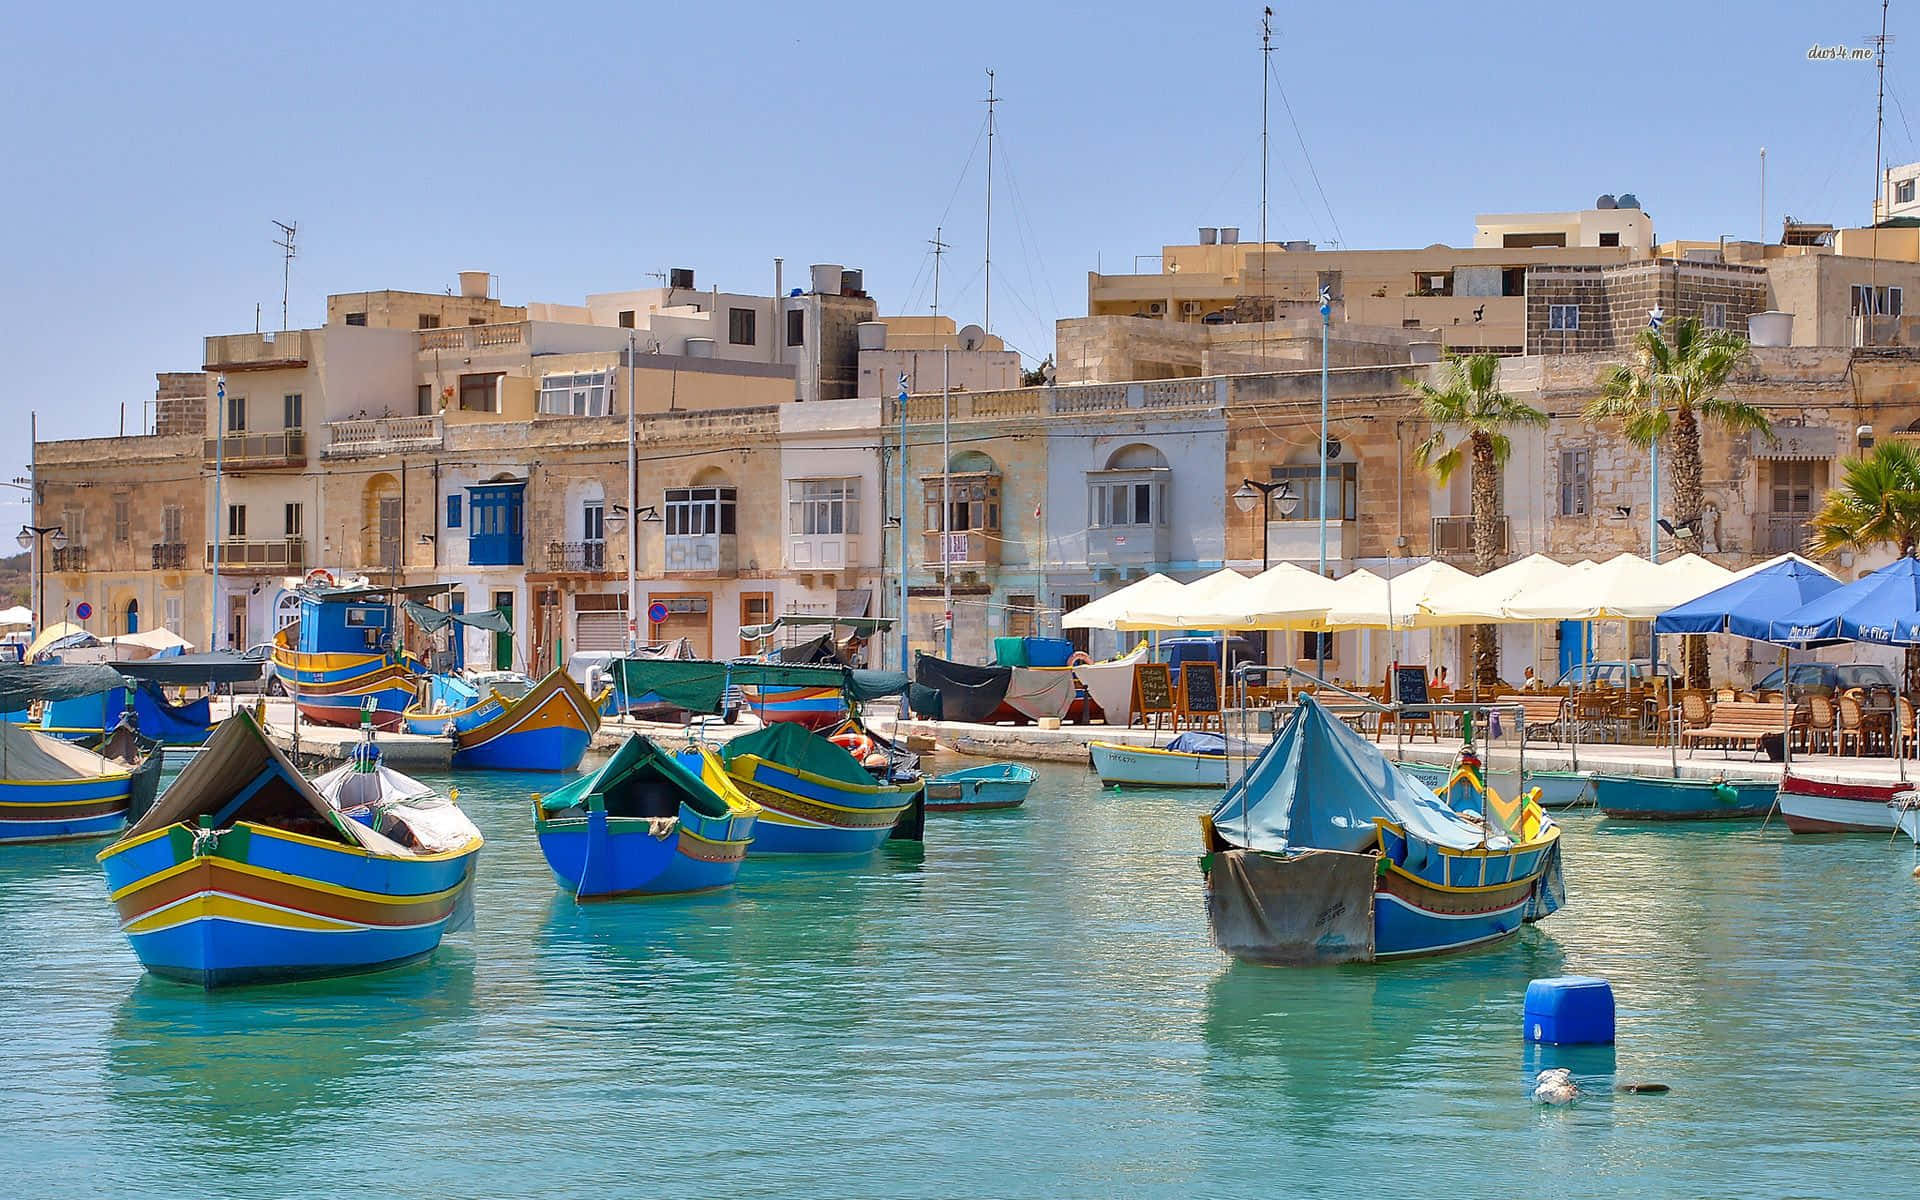 Picturesque Malta Coastline